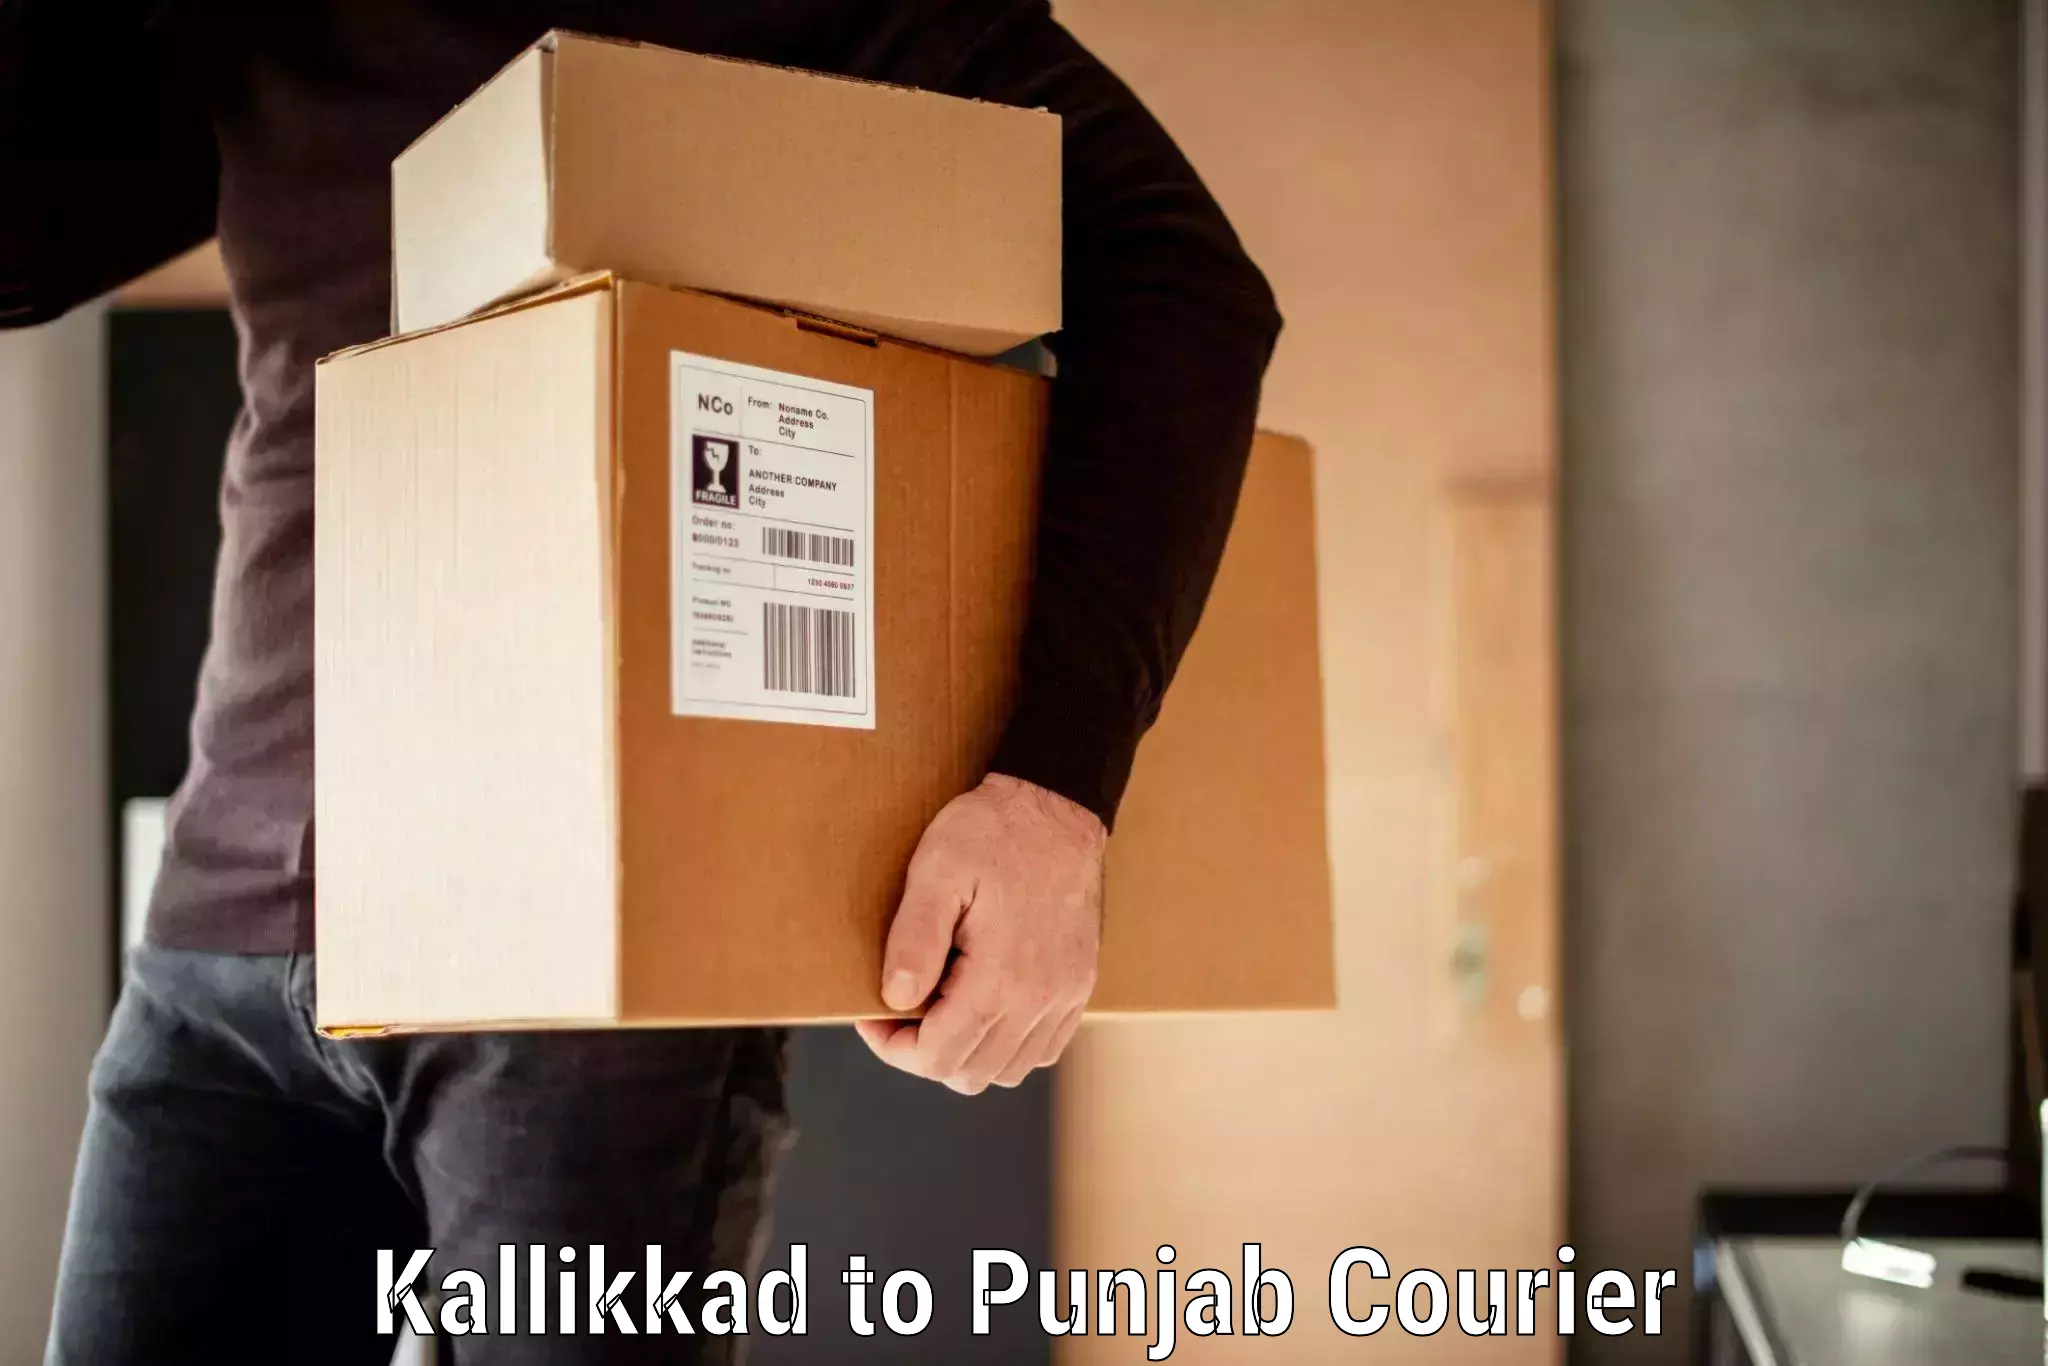 Luggage delivery app Kallikkad to Raikot